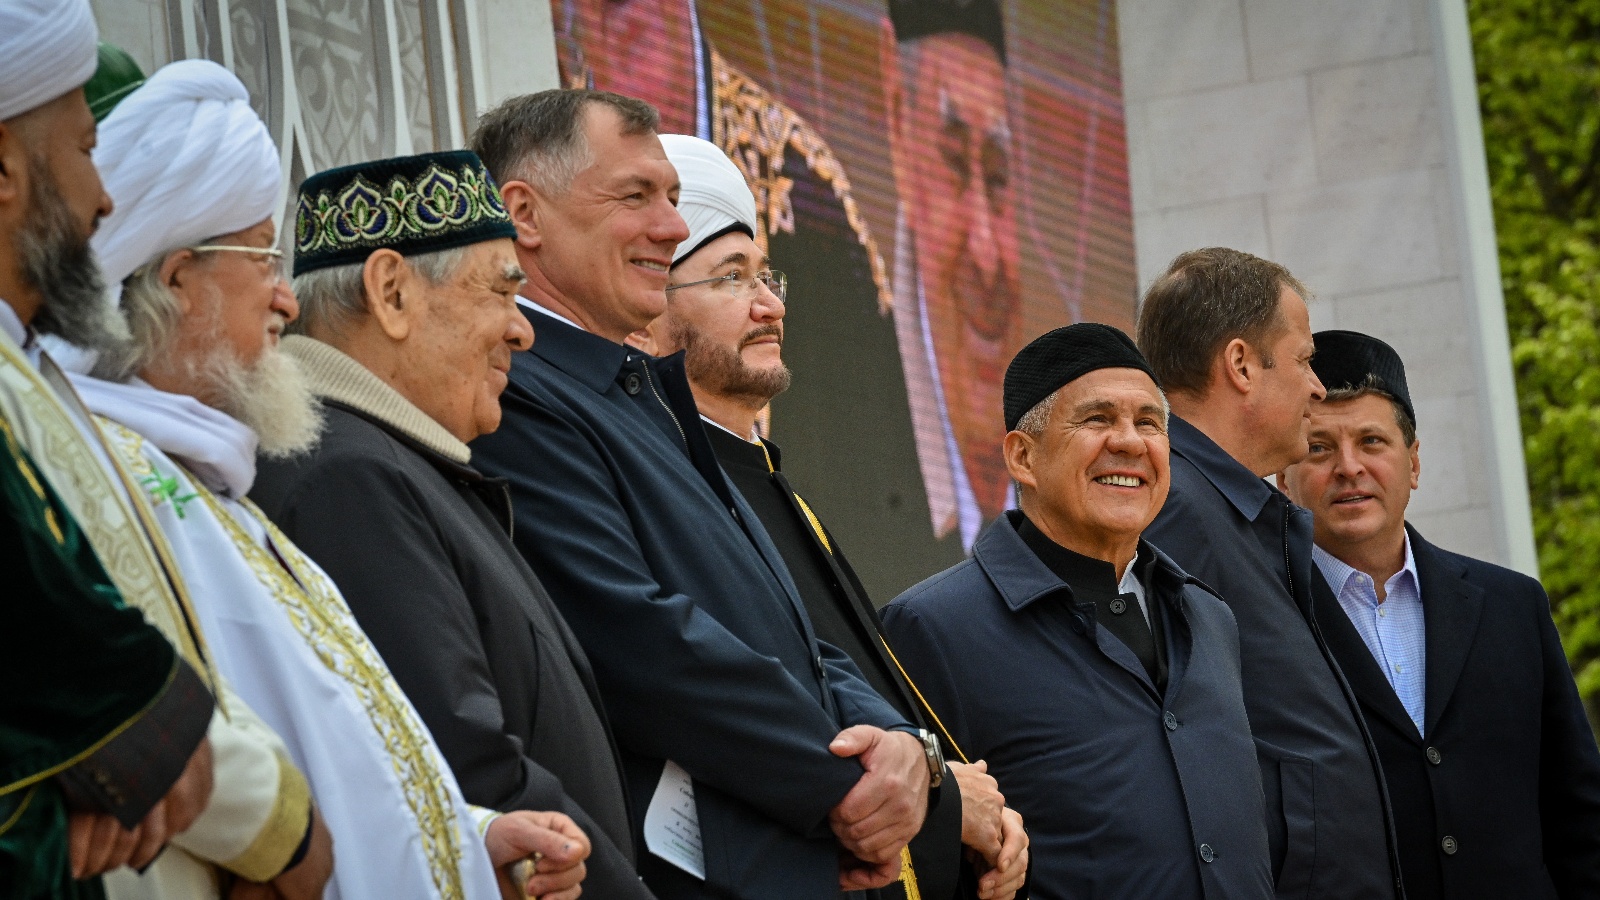 Май 2022 года. Церемония закладки первого камня в основание Соборной мечети